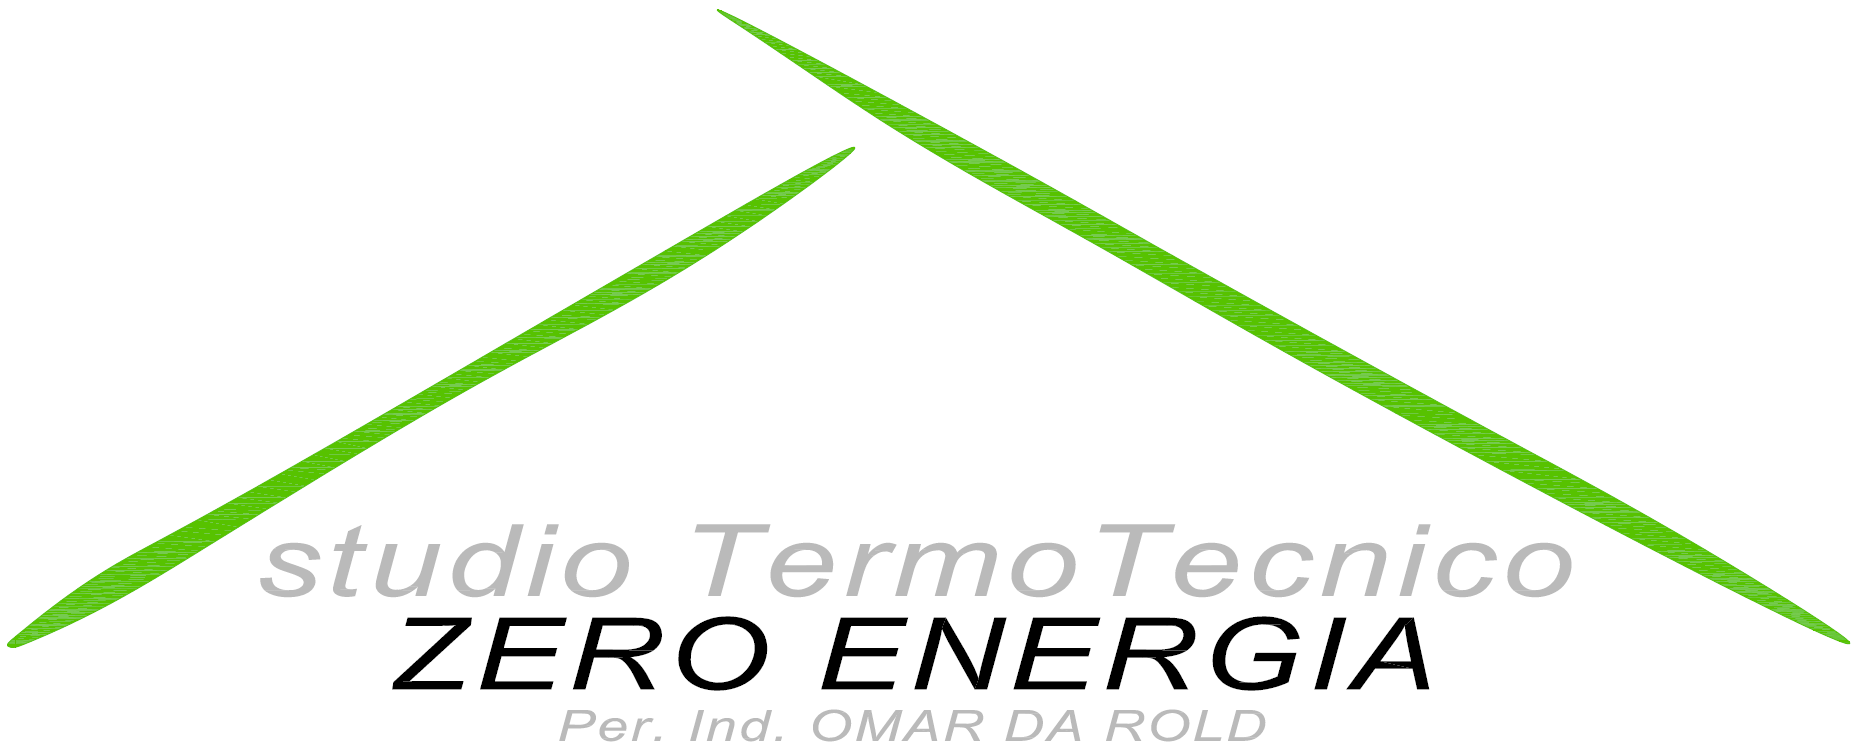 Studio TermoTecnico Zero Energia